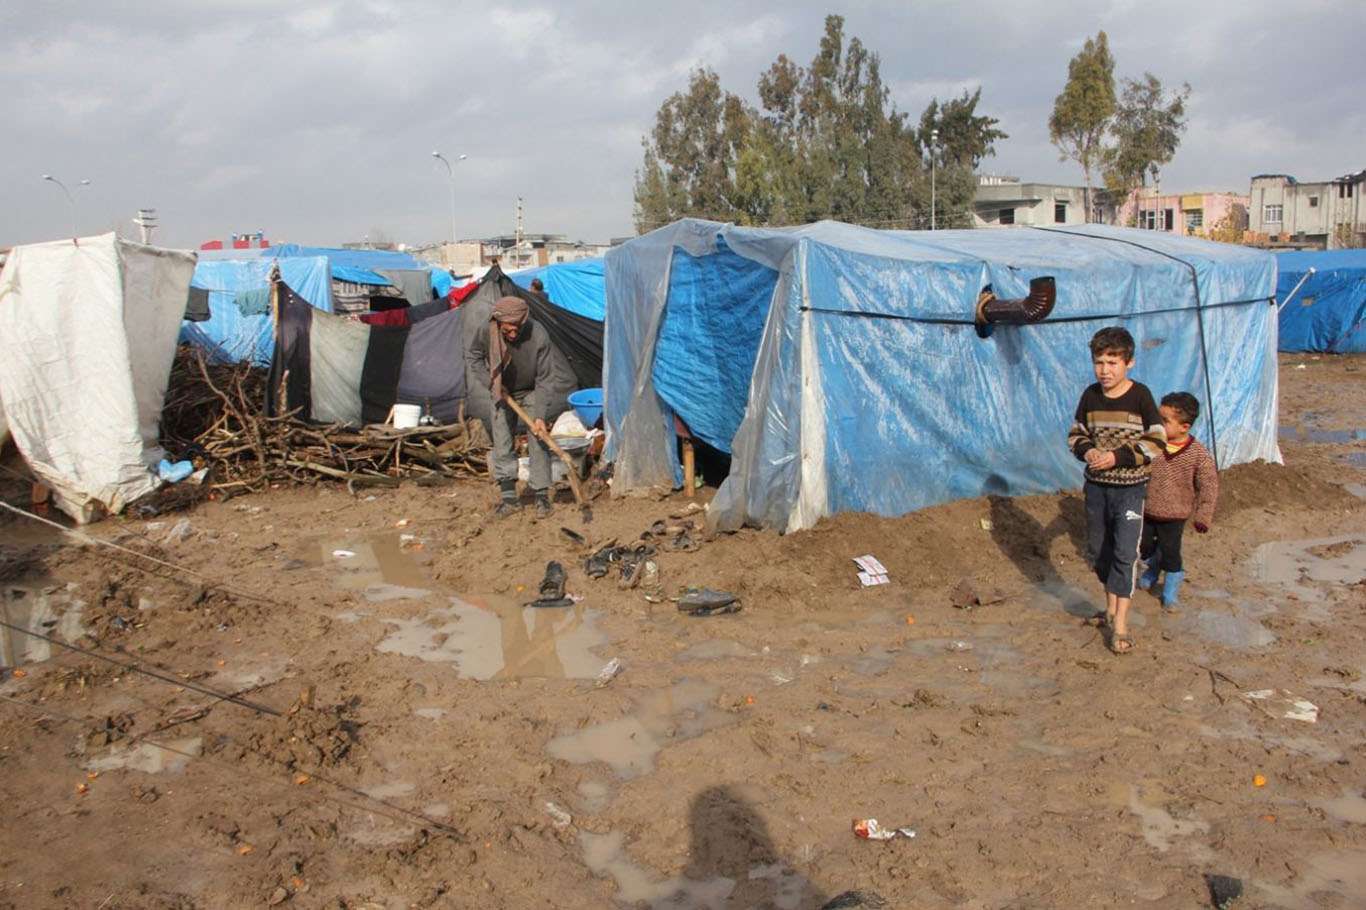 فراخوانی سازمان ملل برای سوریه: باید بیش از این کمک انسانی رسانده شود